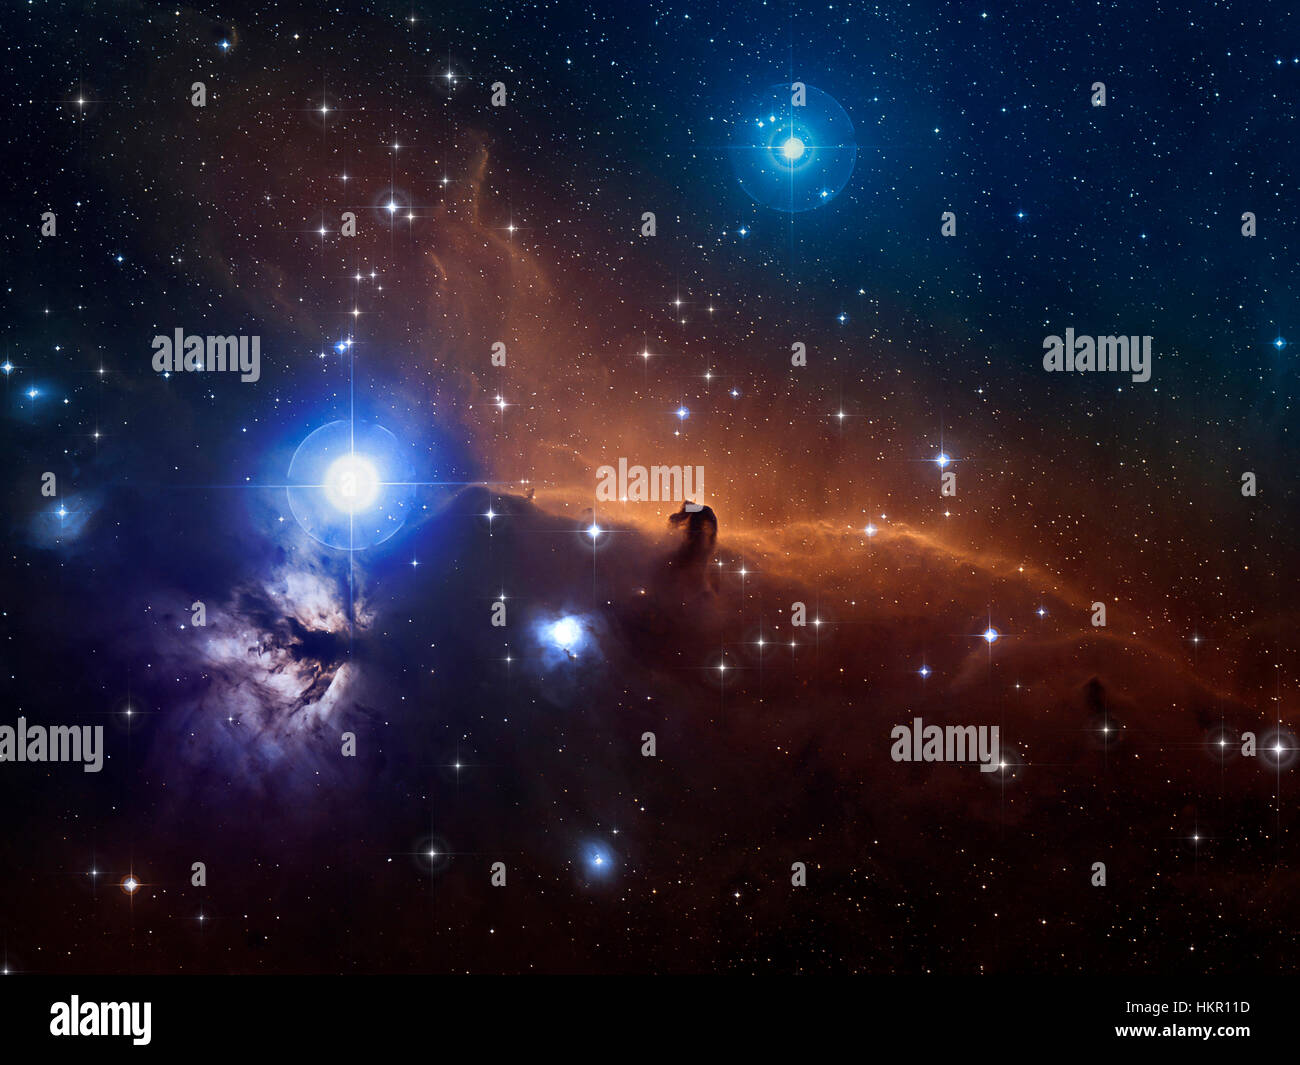 Pferdekopf-Nebel im Hintergrund der Sternenhimmel. Einige Image-Elemente von der NASA eingerichtet. Stockfoto